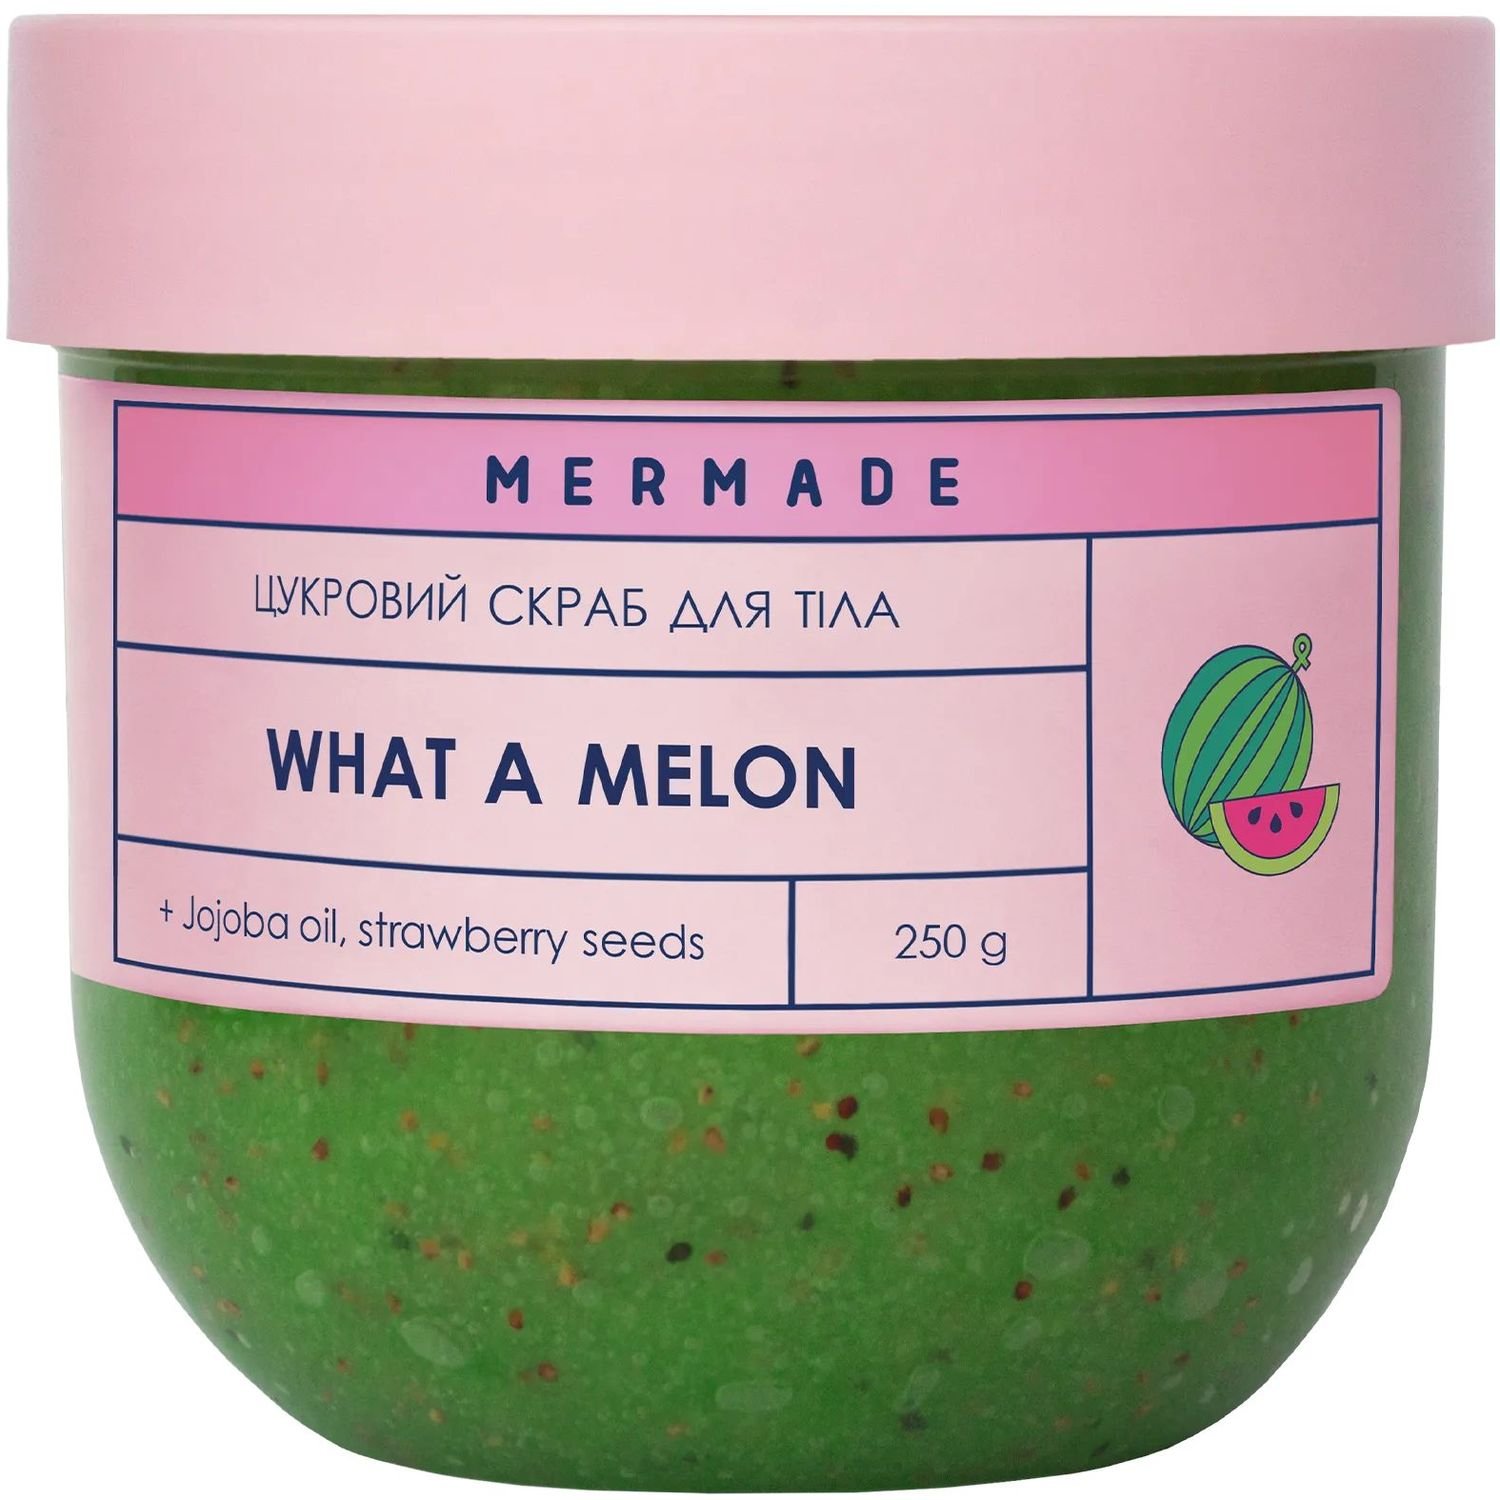 Цукровий скраб для тіла Mermade What a Melon 250 г - фото 1